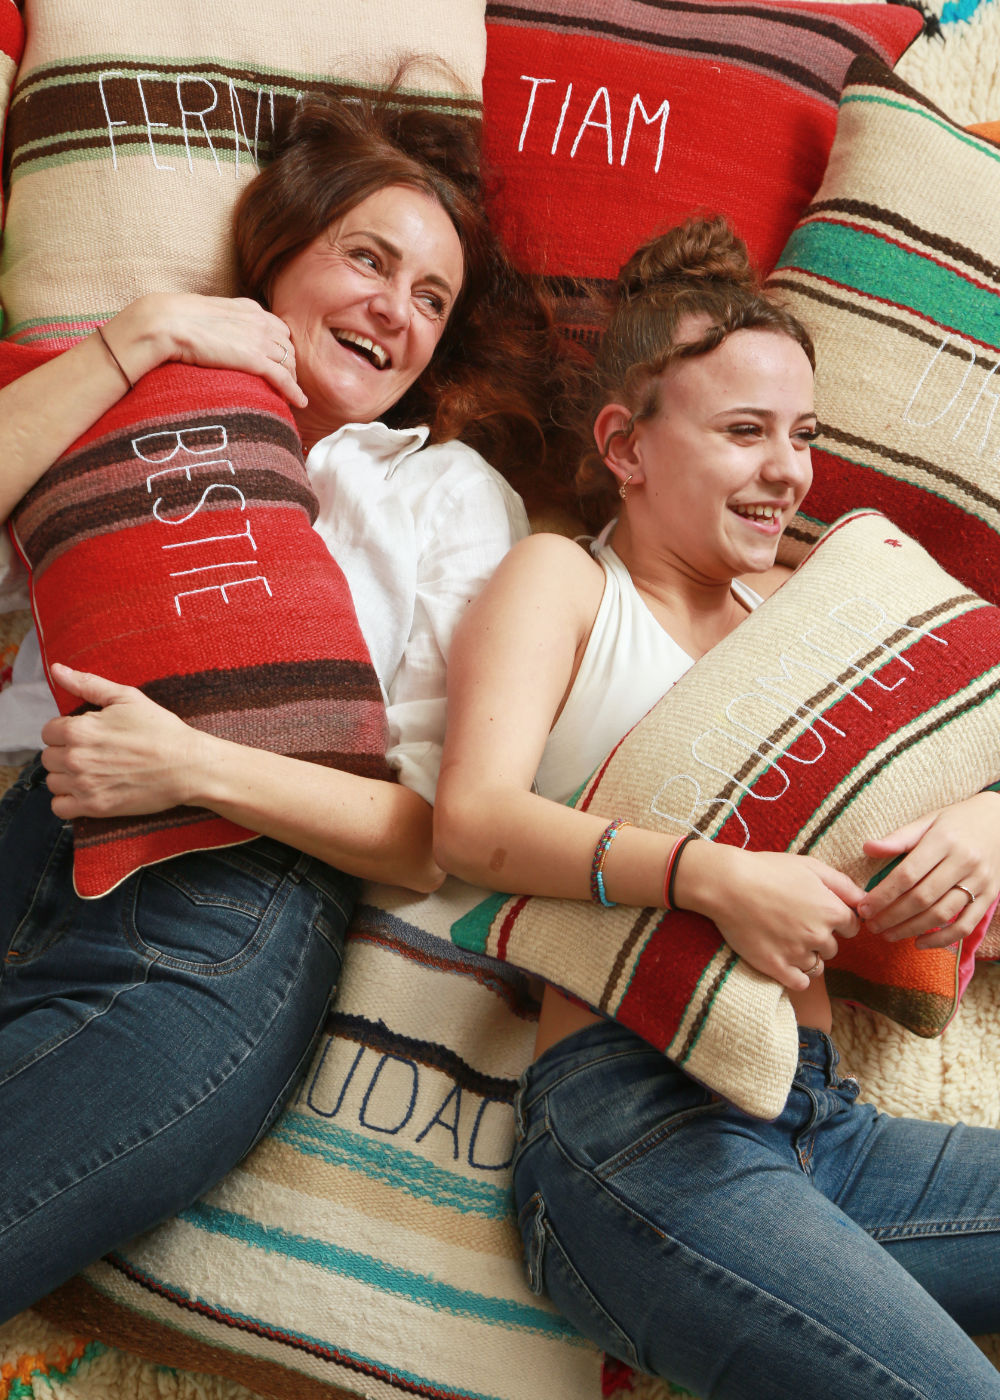 sabina maffei plozner e sua figlia costanza ridono sdraite su un tappeto pieno di cuscini mentre abbracciano un cuscino della collezione tra le righe